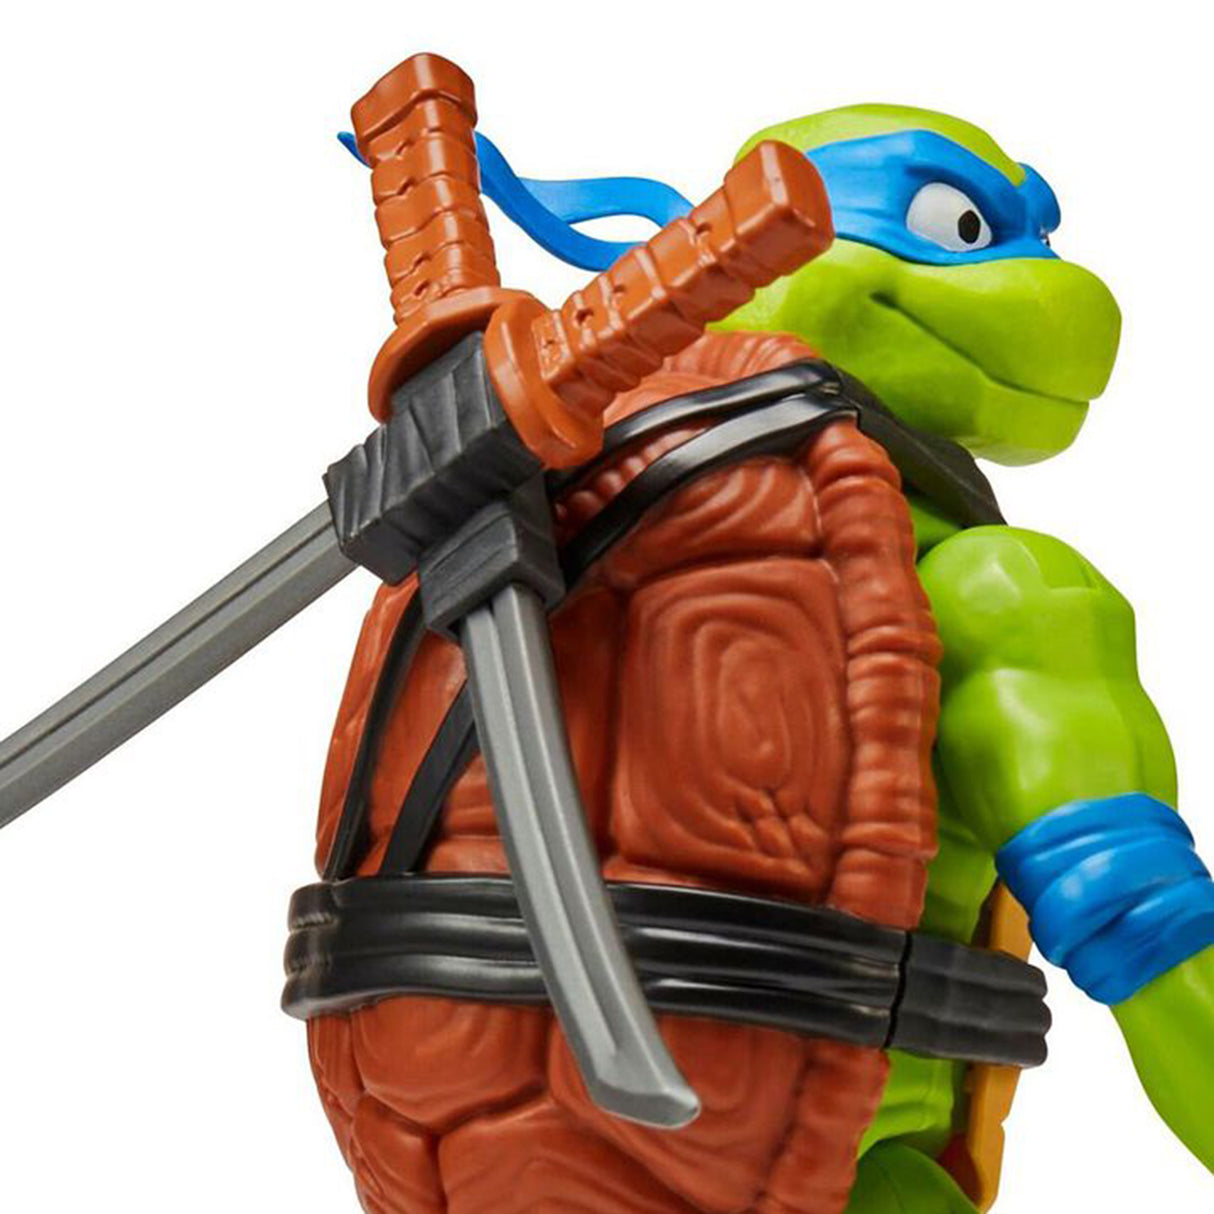 Teenage Mutant Ninja Turtles TMNT Movie Giant Figure - Leonardo